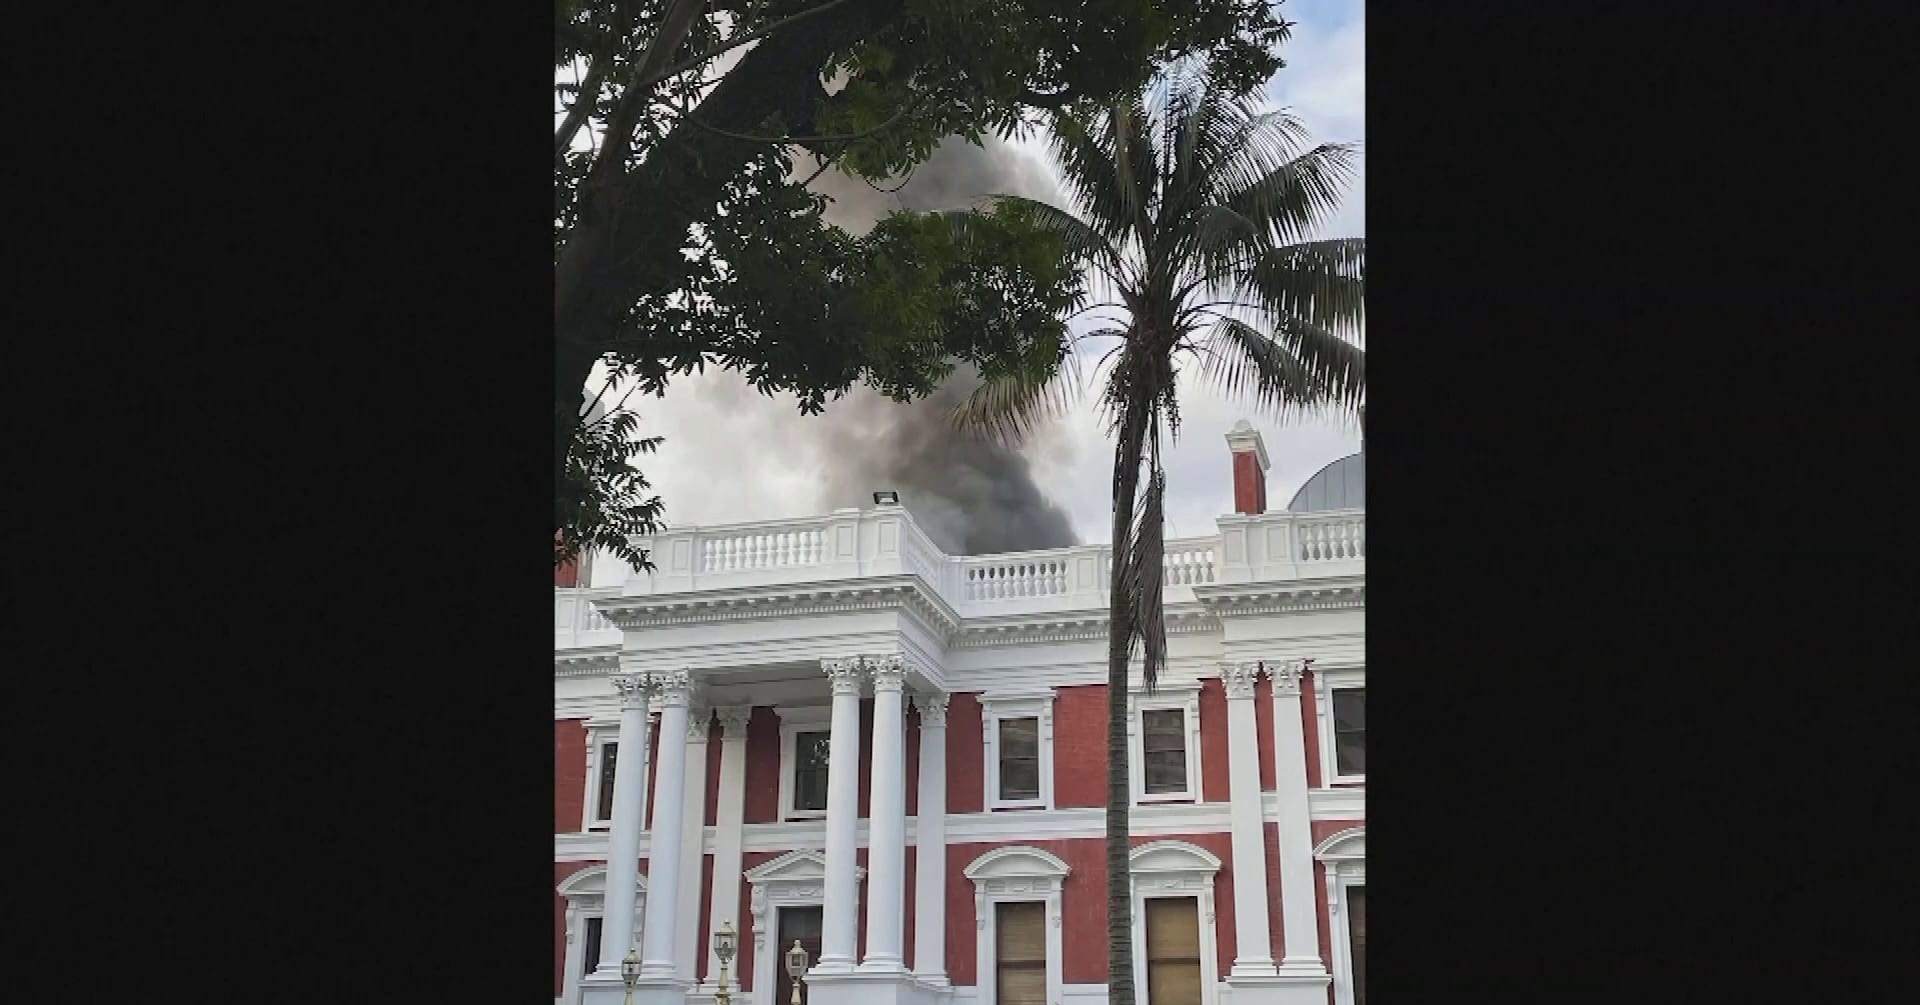 Katso video: Etelä-Afrikan parlamenttitalo liekeissä Kapkaupungissa